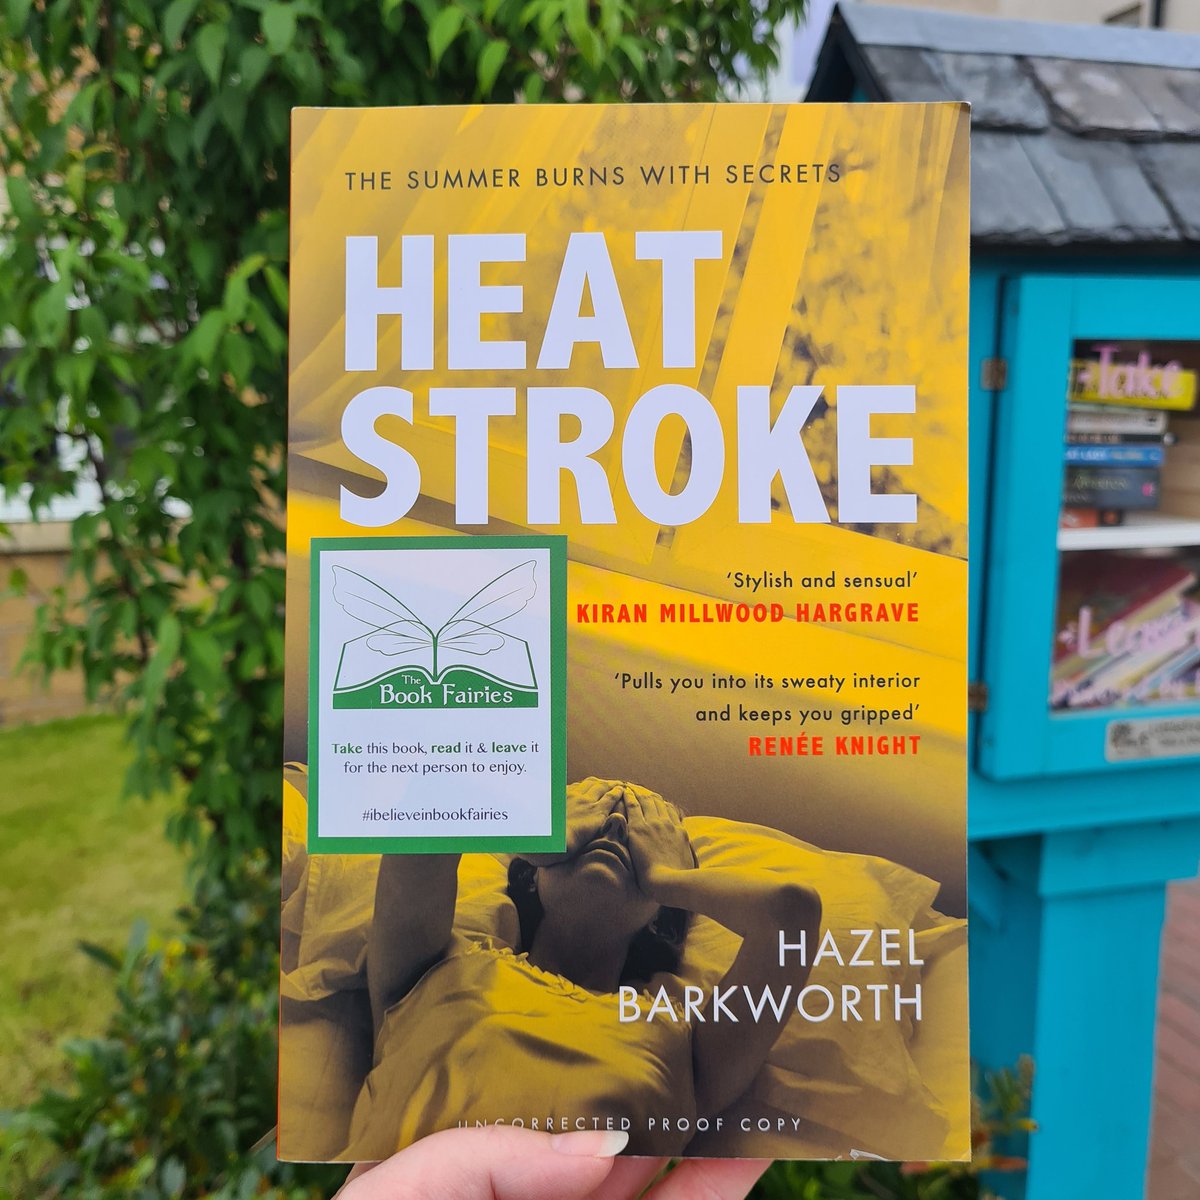 Back in the Little Book House, it's Hazel Barkworth's, Heatstroke. 
#IBelieveInBookFairies #DebutBookFairies #HeatstrokeBook #HazelBarkworth #HeadlineBooks #DebutAuthors